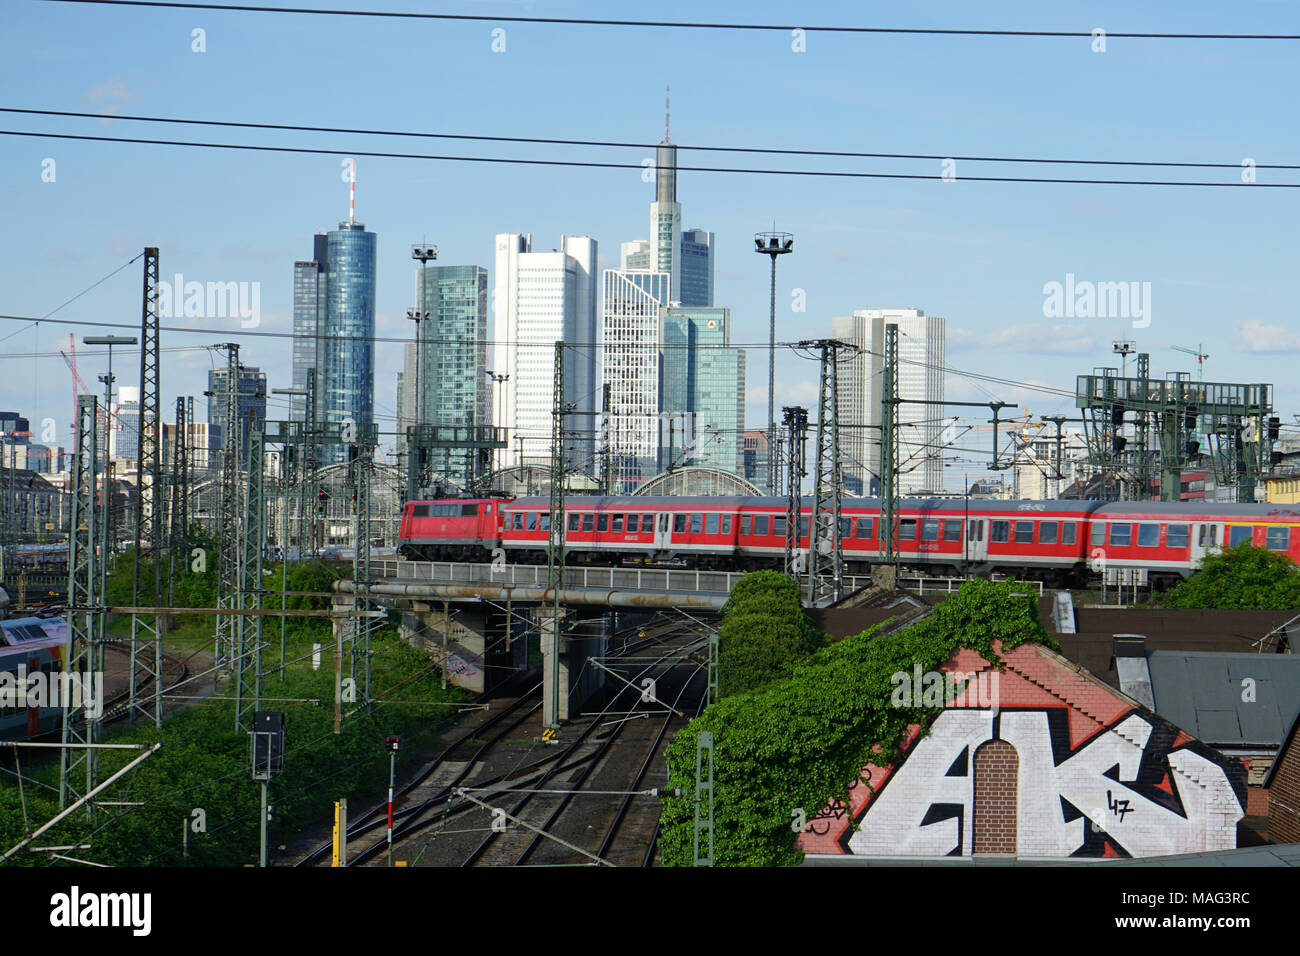 Zug fährt über eine Brücke, Gleise zum Frankfurter Hauptbahnhof, Skyline, Francoforte, Deutschland, Europa Foto Stock